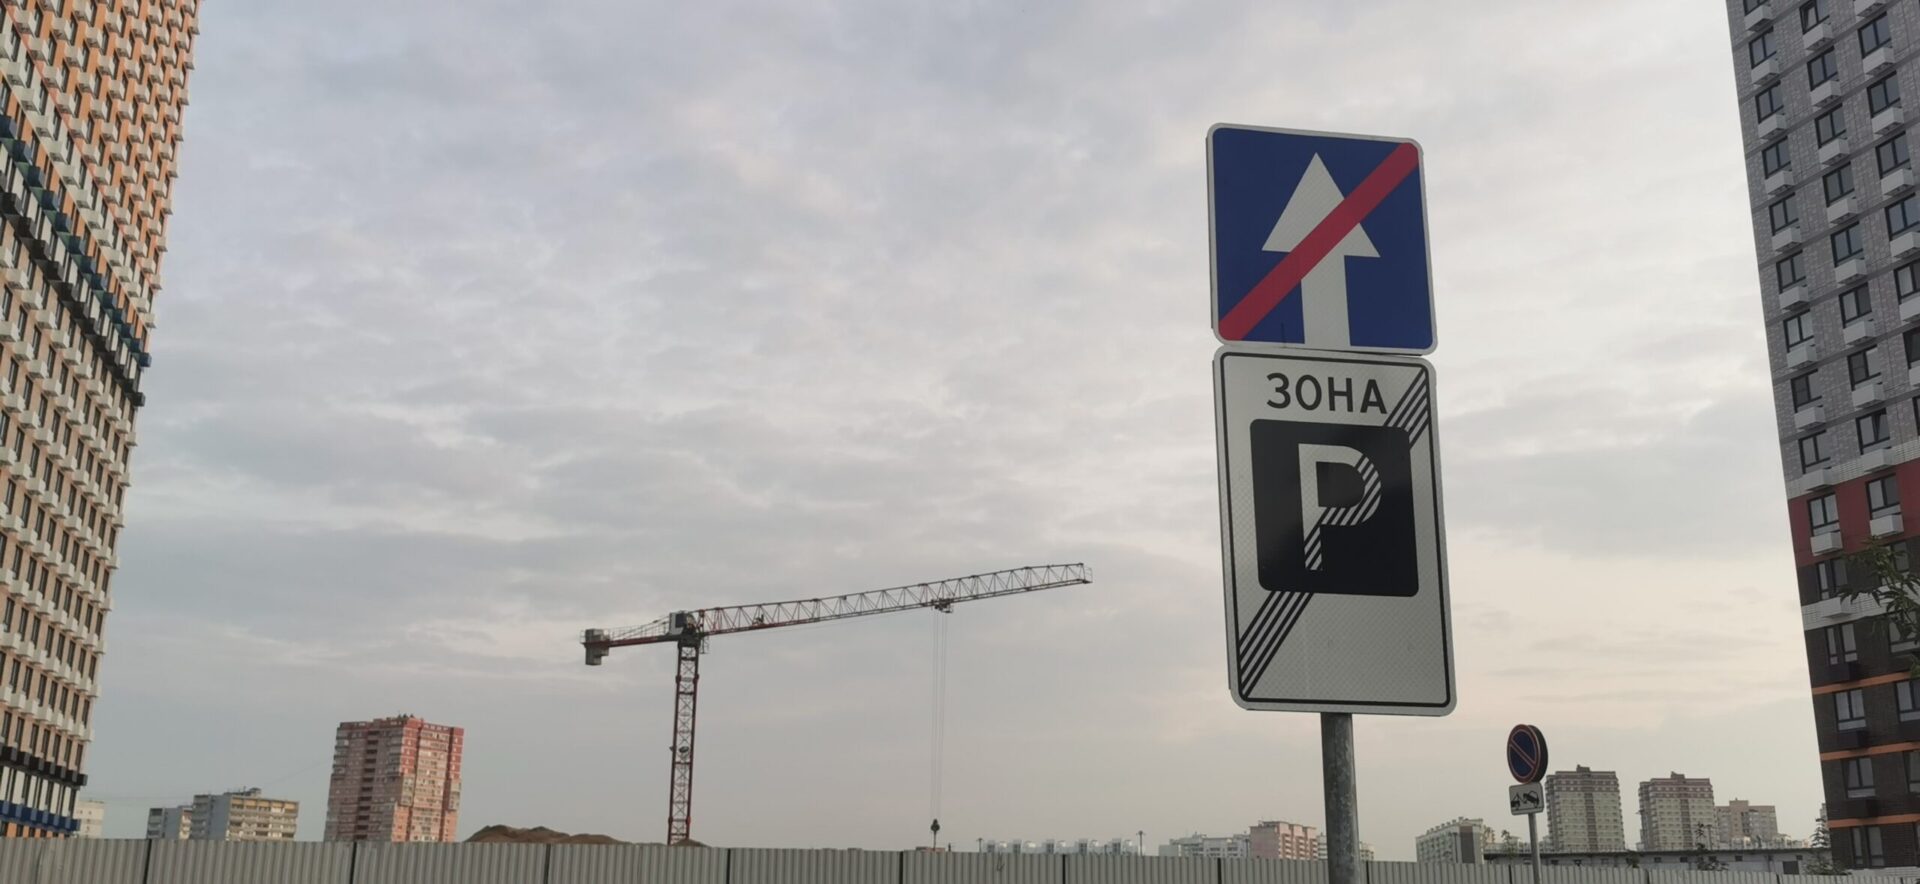 ГИБДД вводит полный запрет парковки на островках для всех водителей в РФ с 18 октября 2022 года